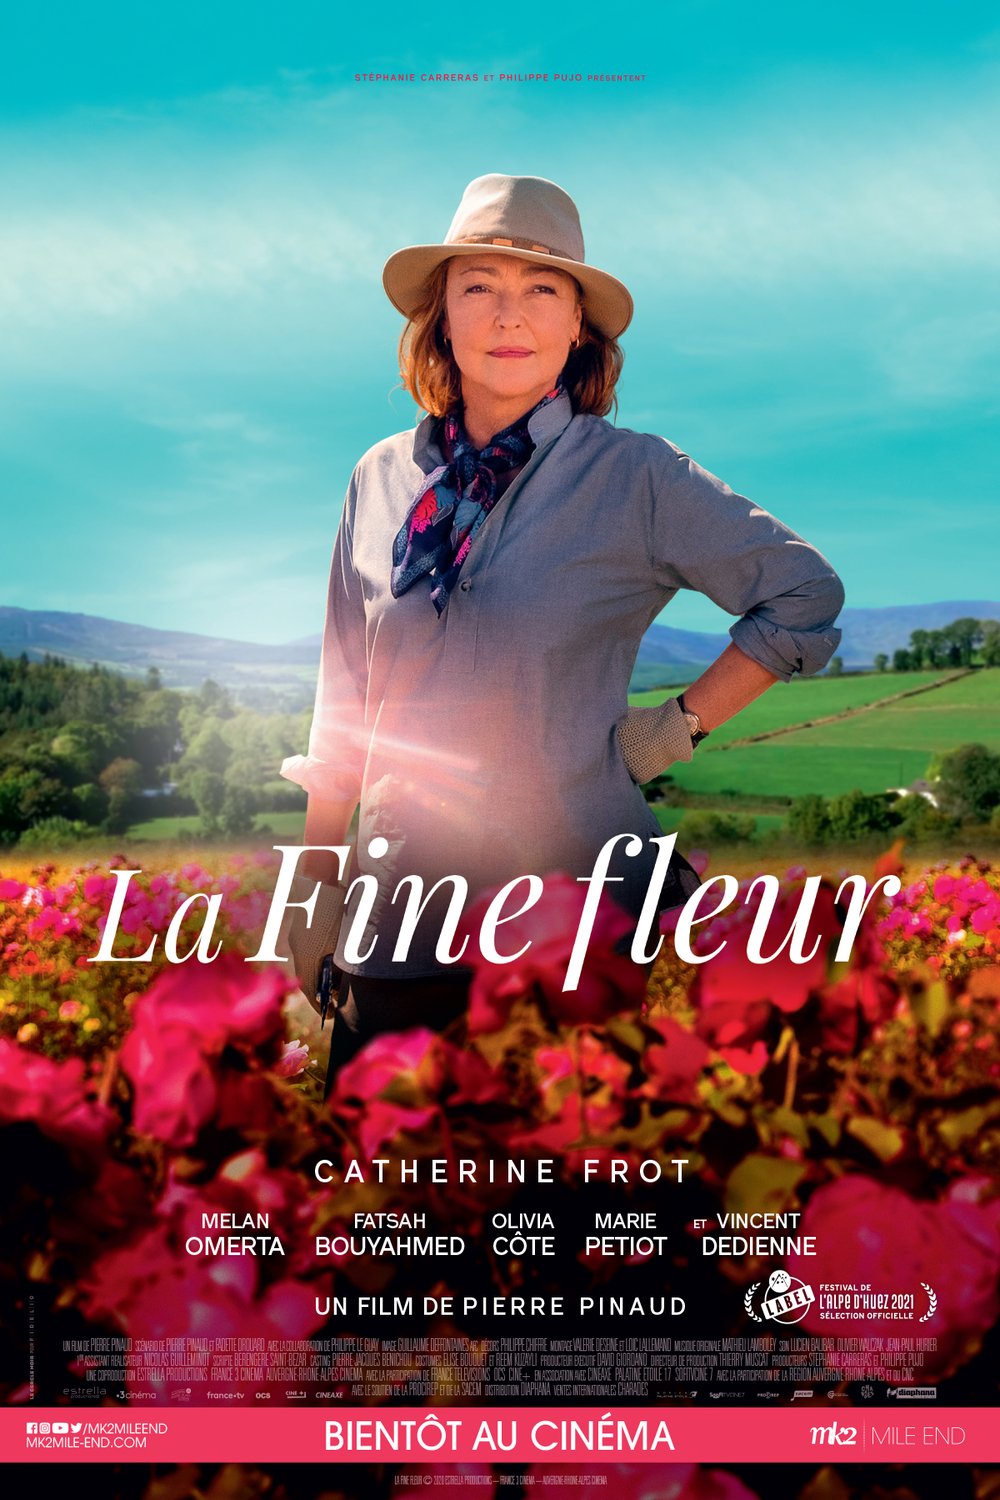 Poster of the movie La fine fleur